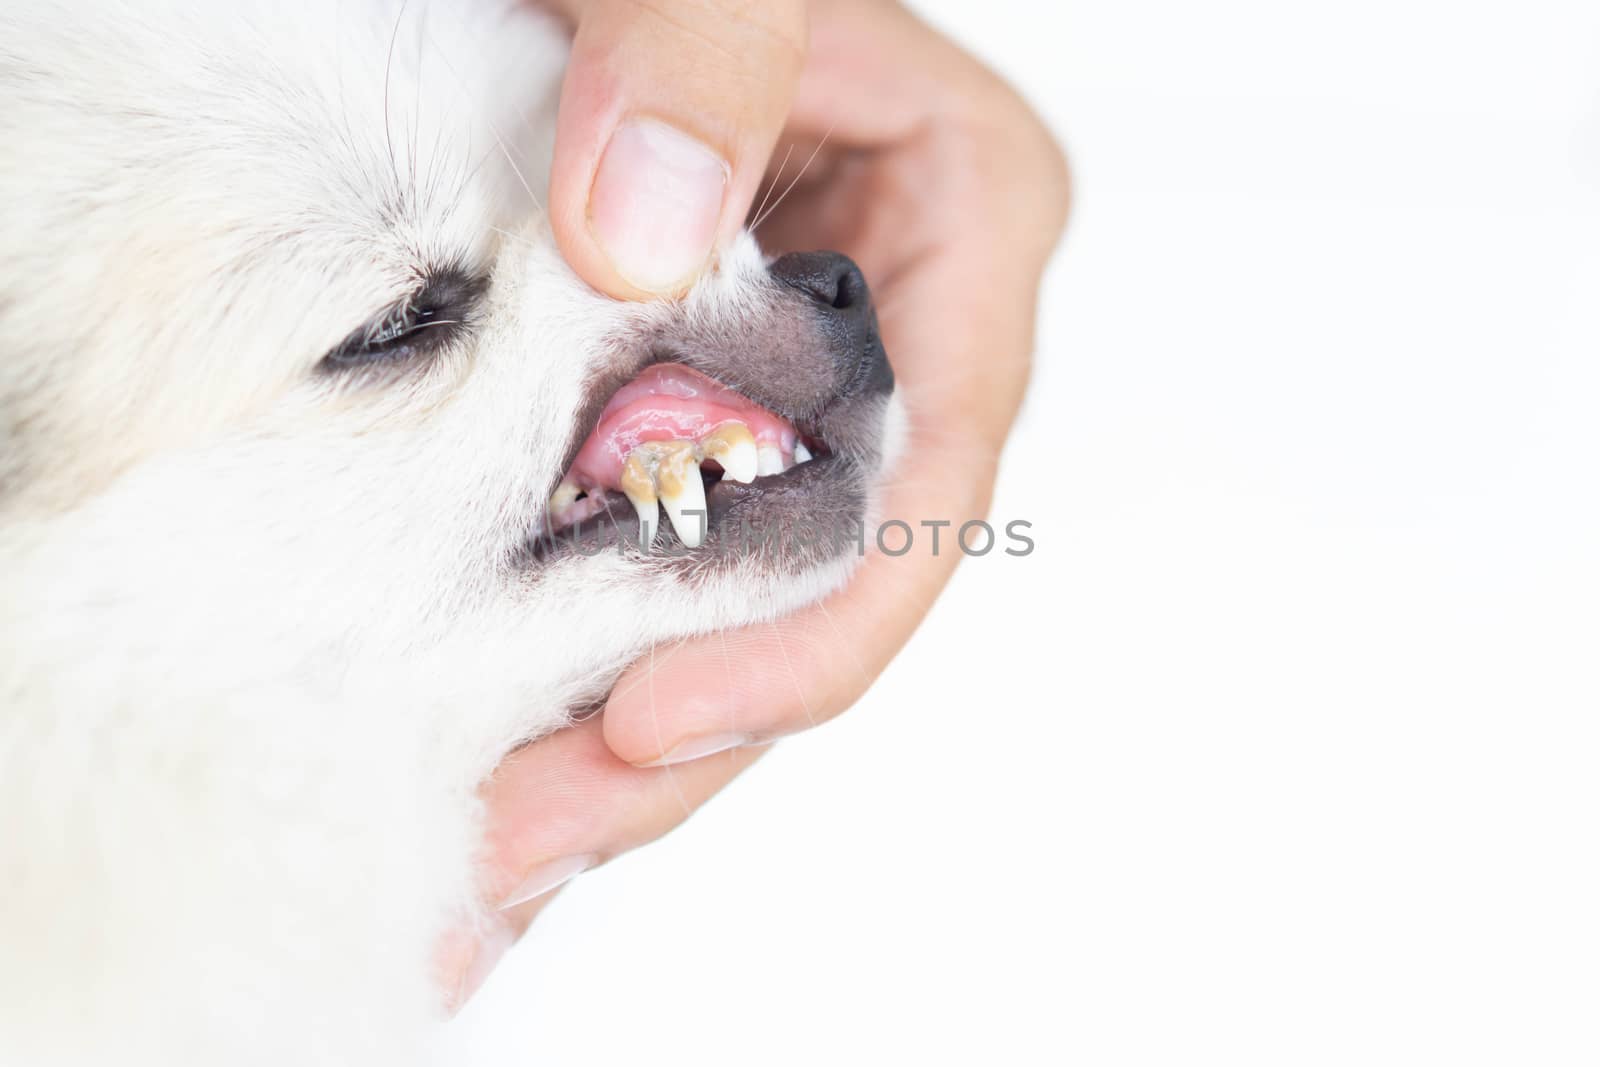 Closeup teeth of dog with tartar, pet health care concept, selective focus